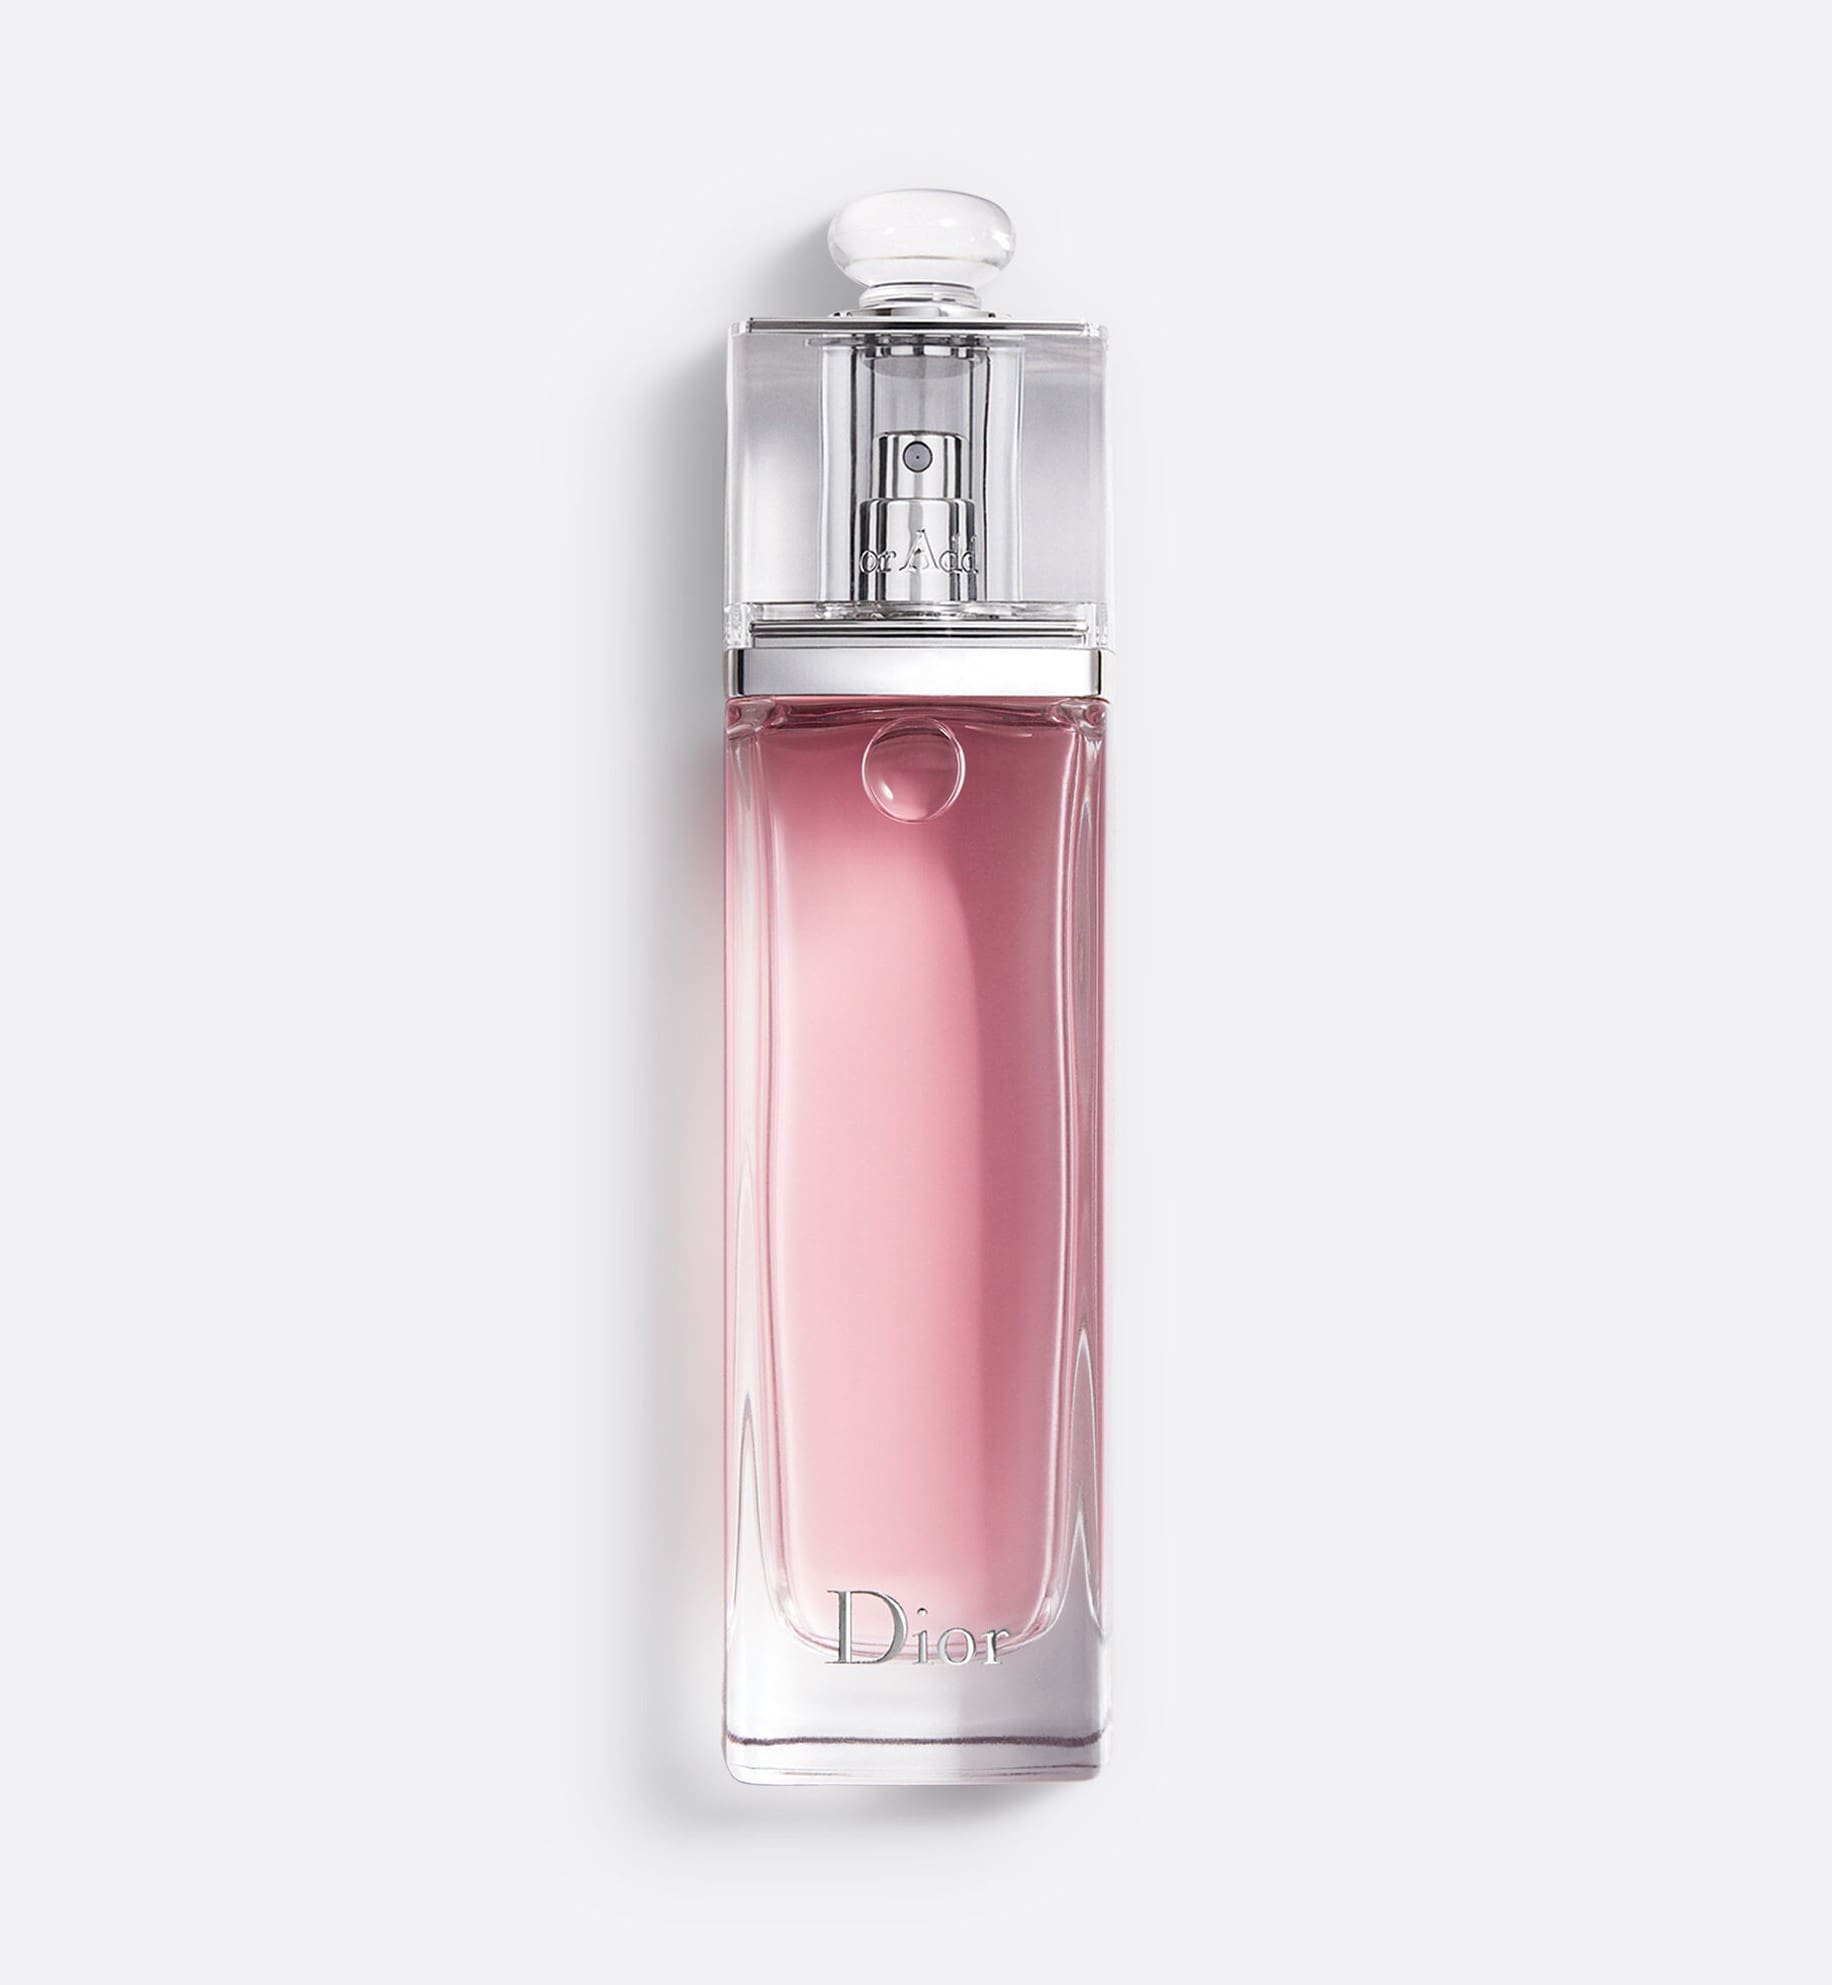 Dior Addict  Eau Fraiche Perfume for Women by Dior